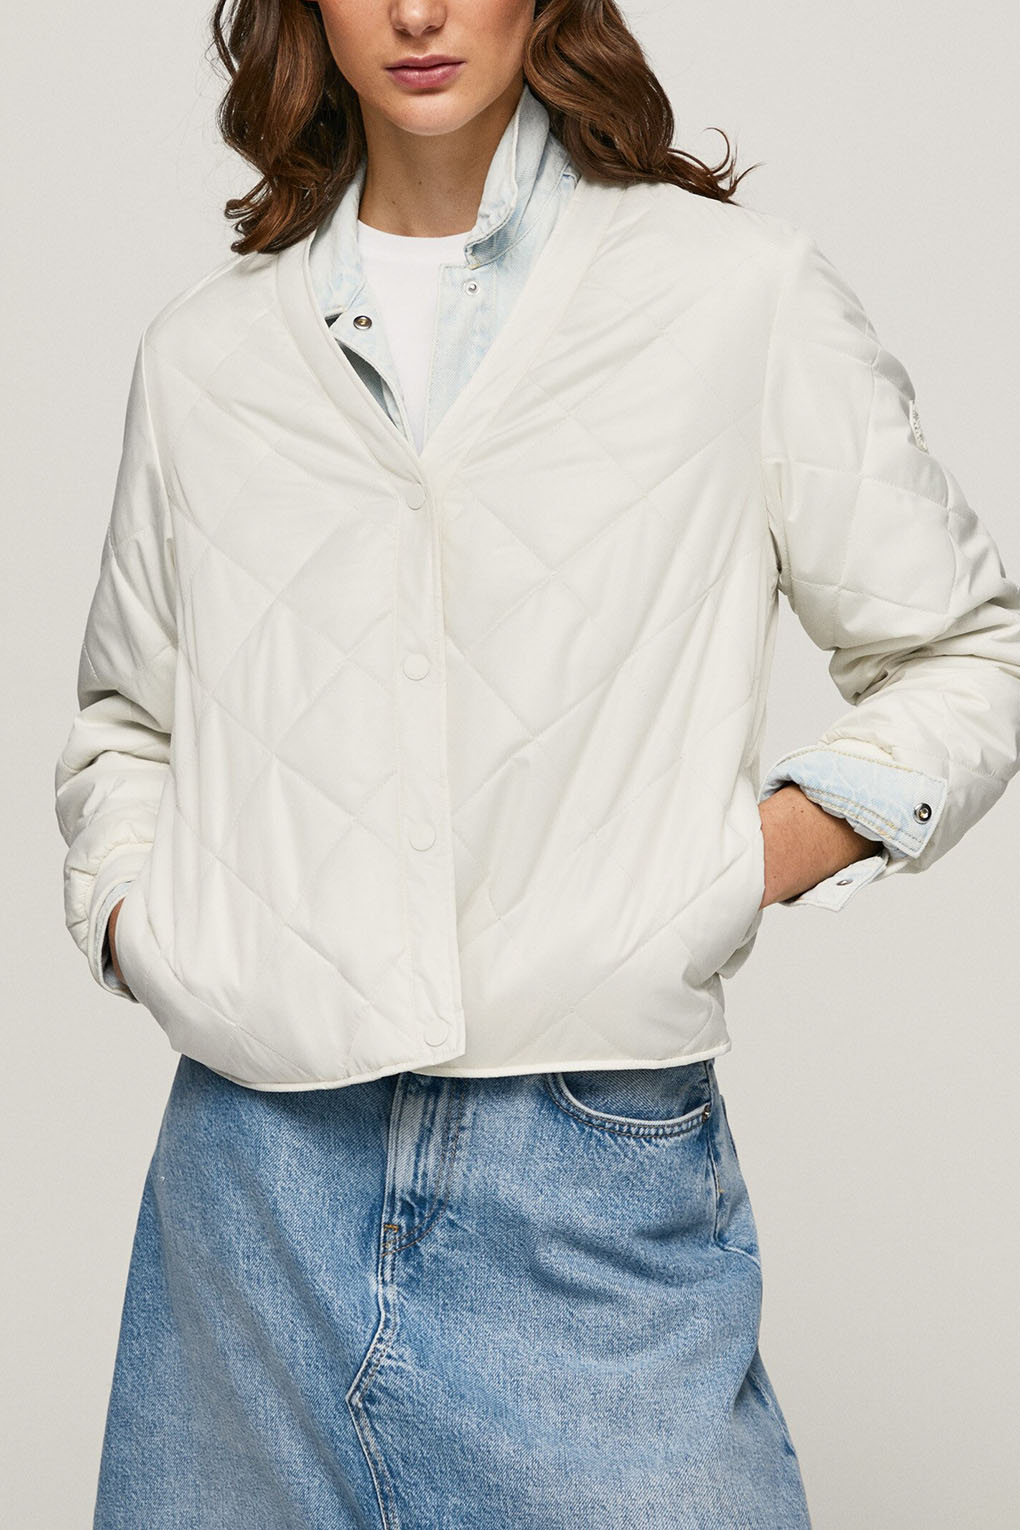 Кожаная куртка женская Pepe Jeans London PL402172 белая M